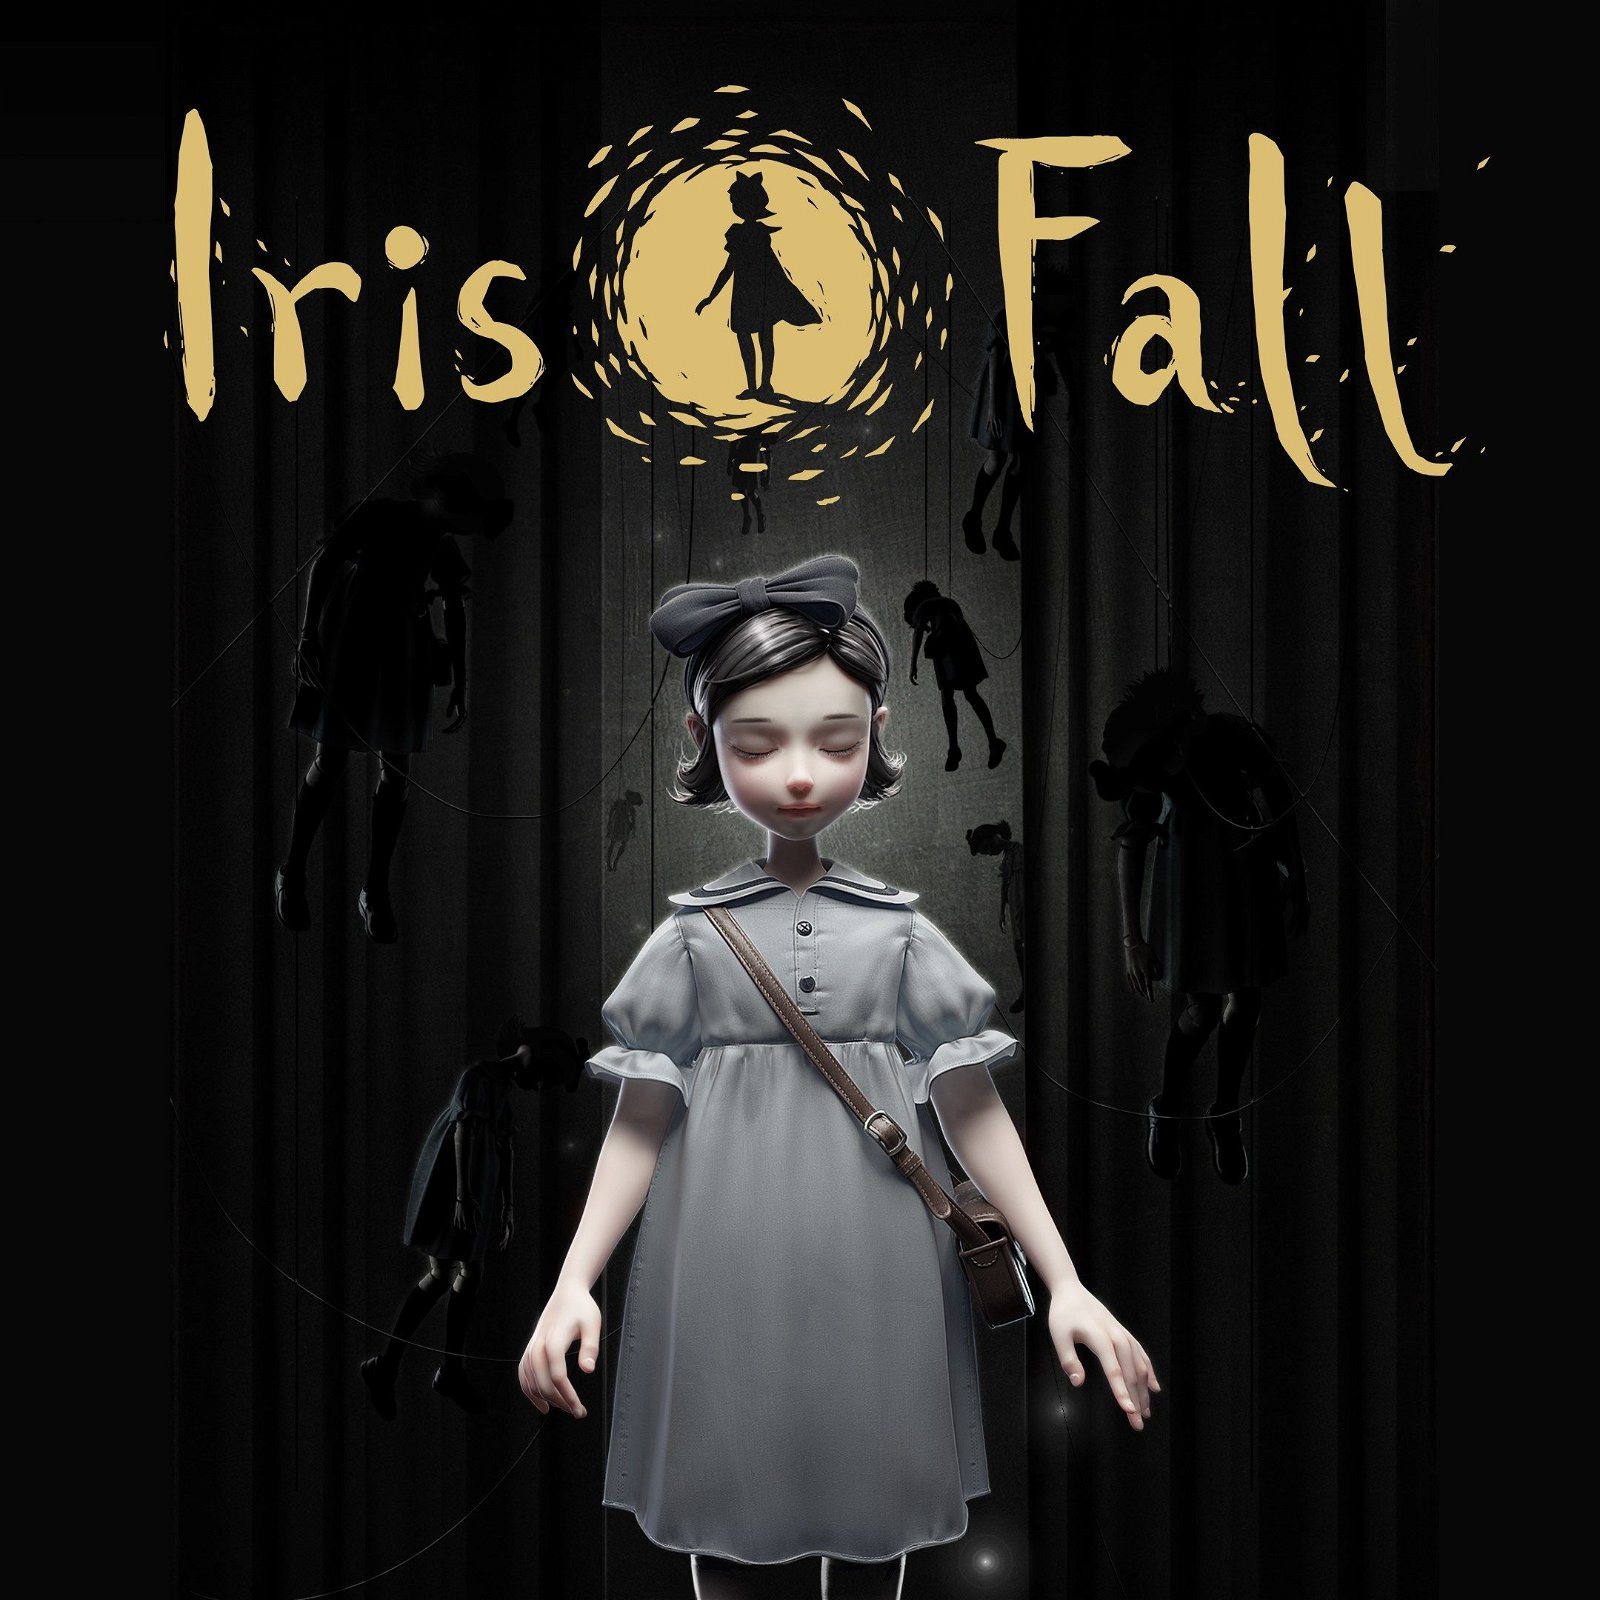 Image of Iris Fall